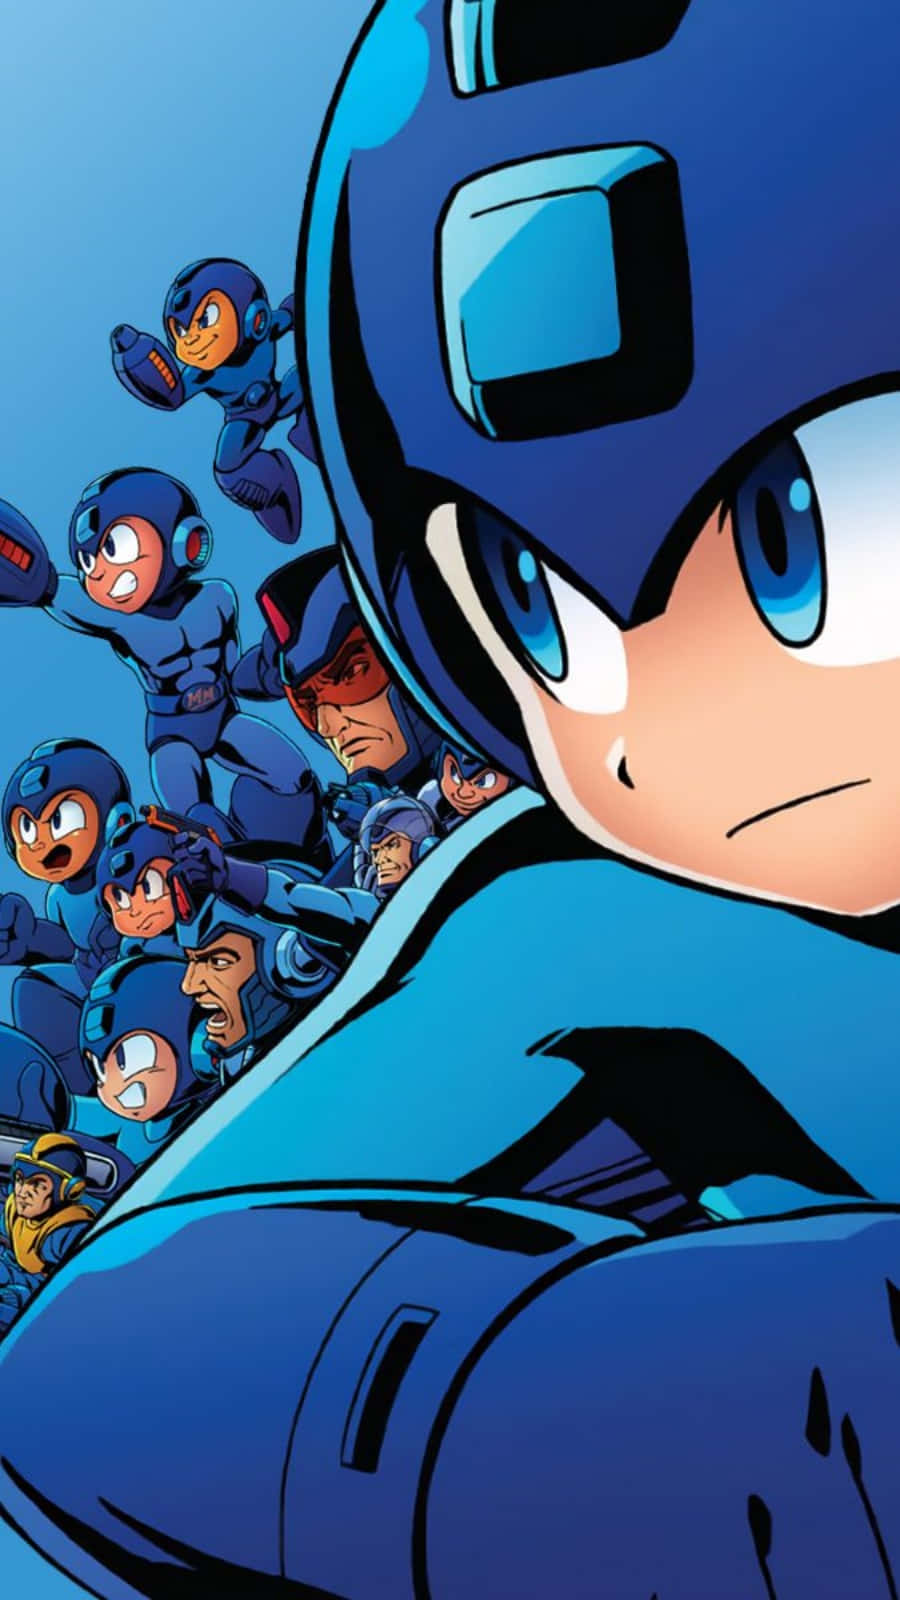 Mega Man, det Capcom-karakter, ser stor ud på denne baggrund. Wallpaper